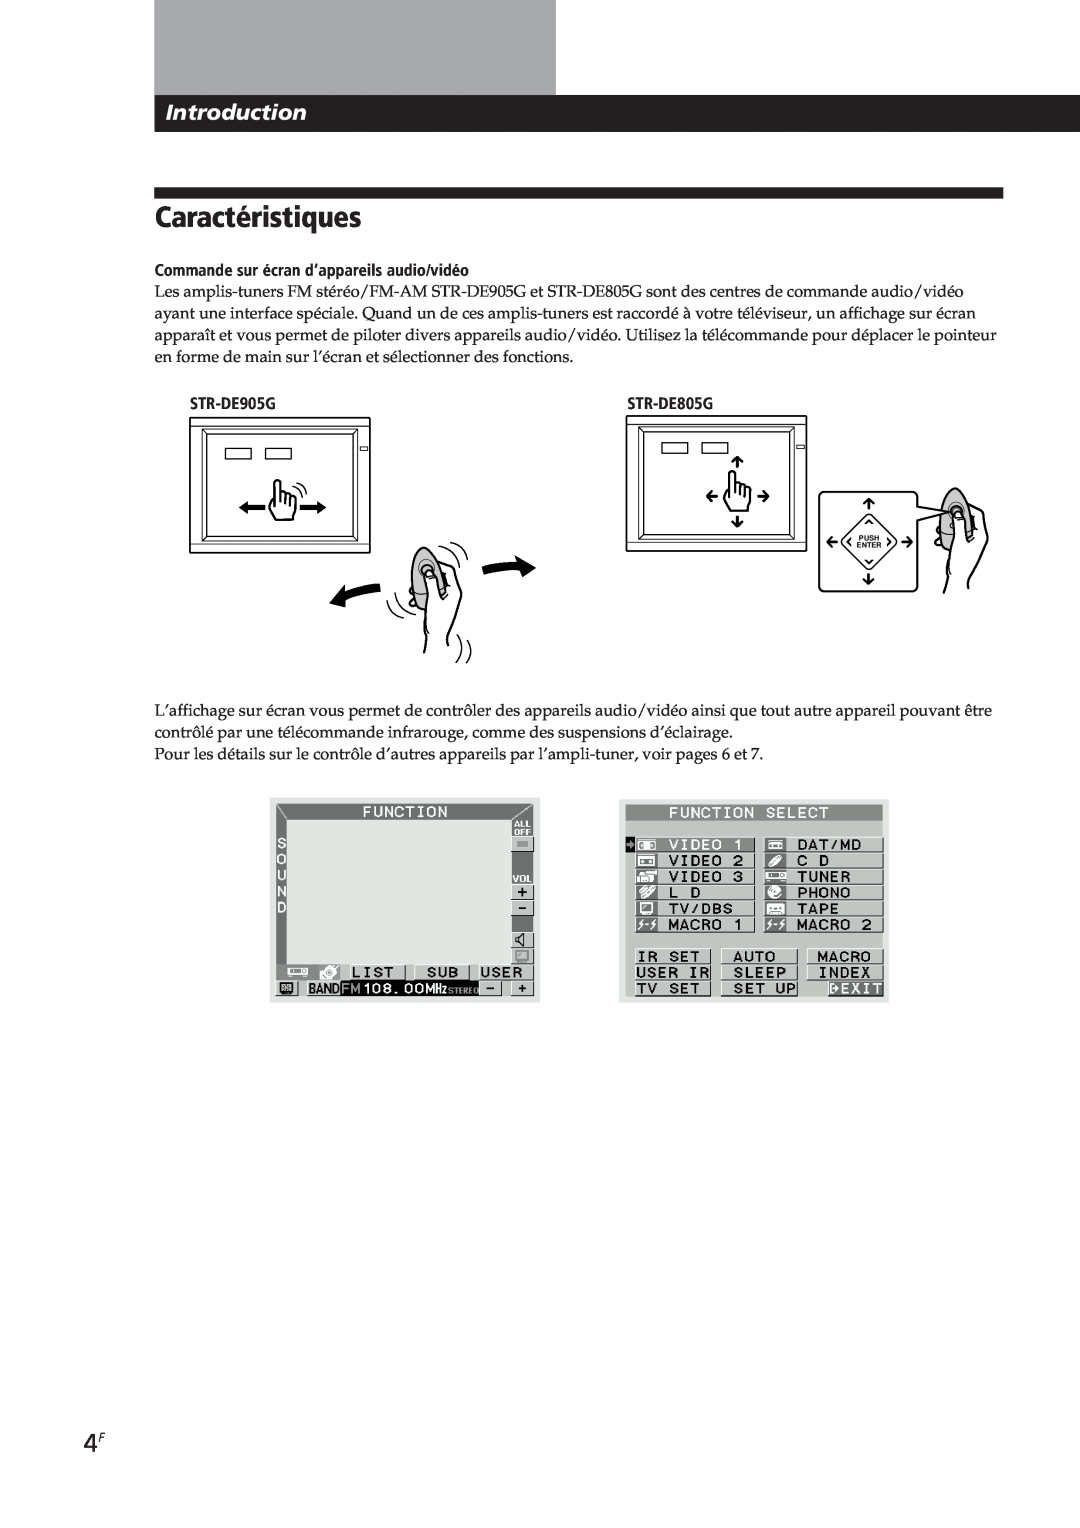 Sony STR-DE905G, STR-DE805G manual Caractéristiques, Introduction, å Mm µ, Commande sur écran d’appareils audio/vidéo 